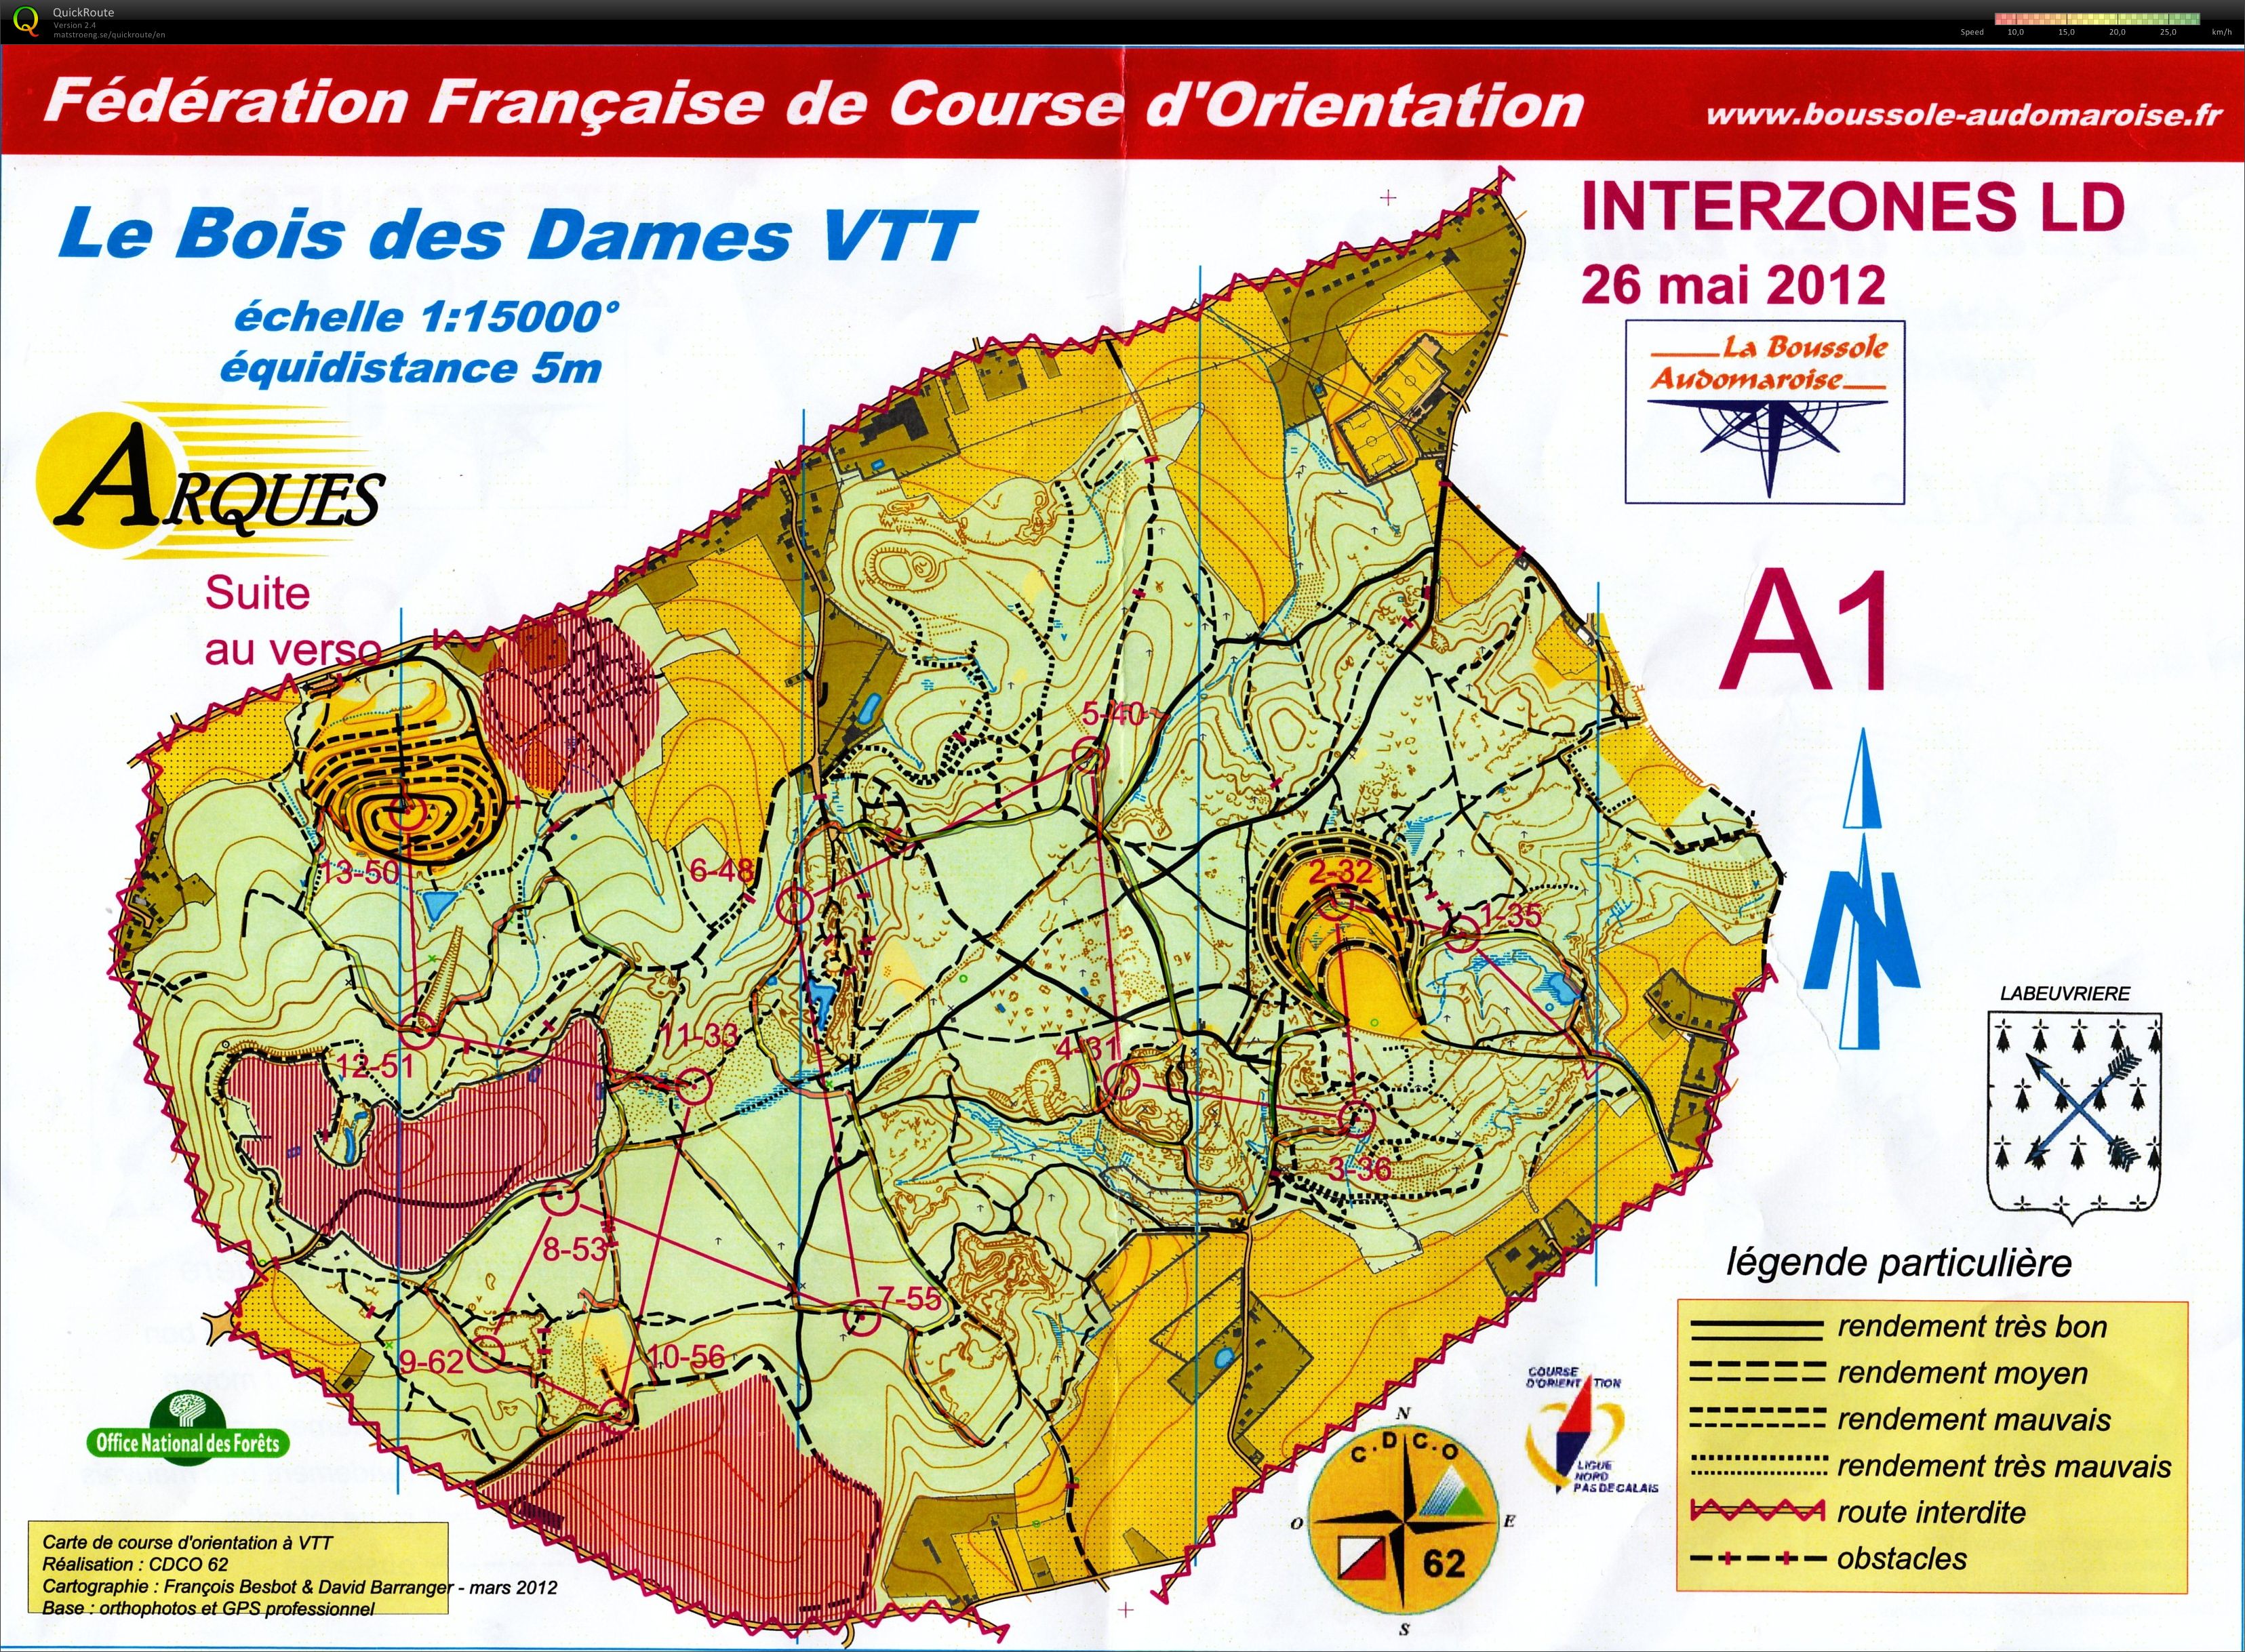 Interzone VTT LD (26/05/2012)